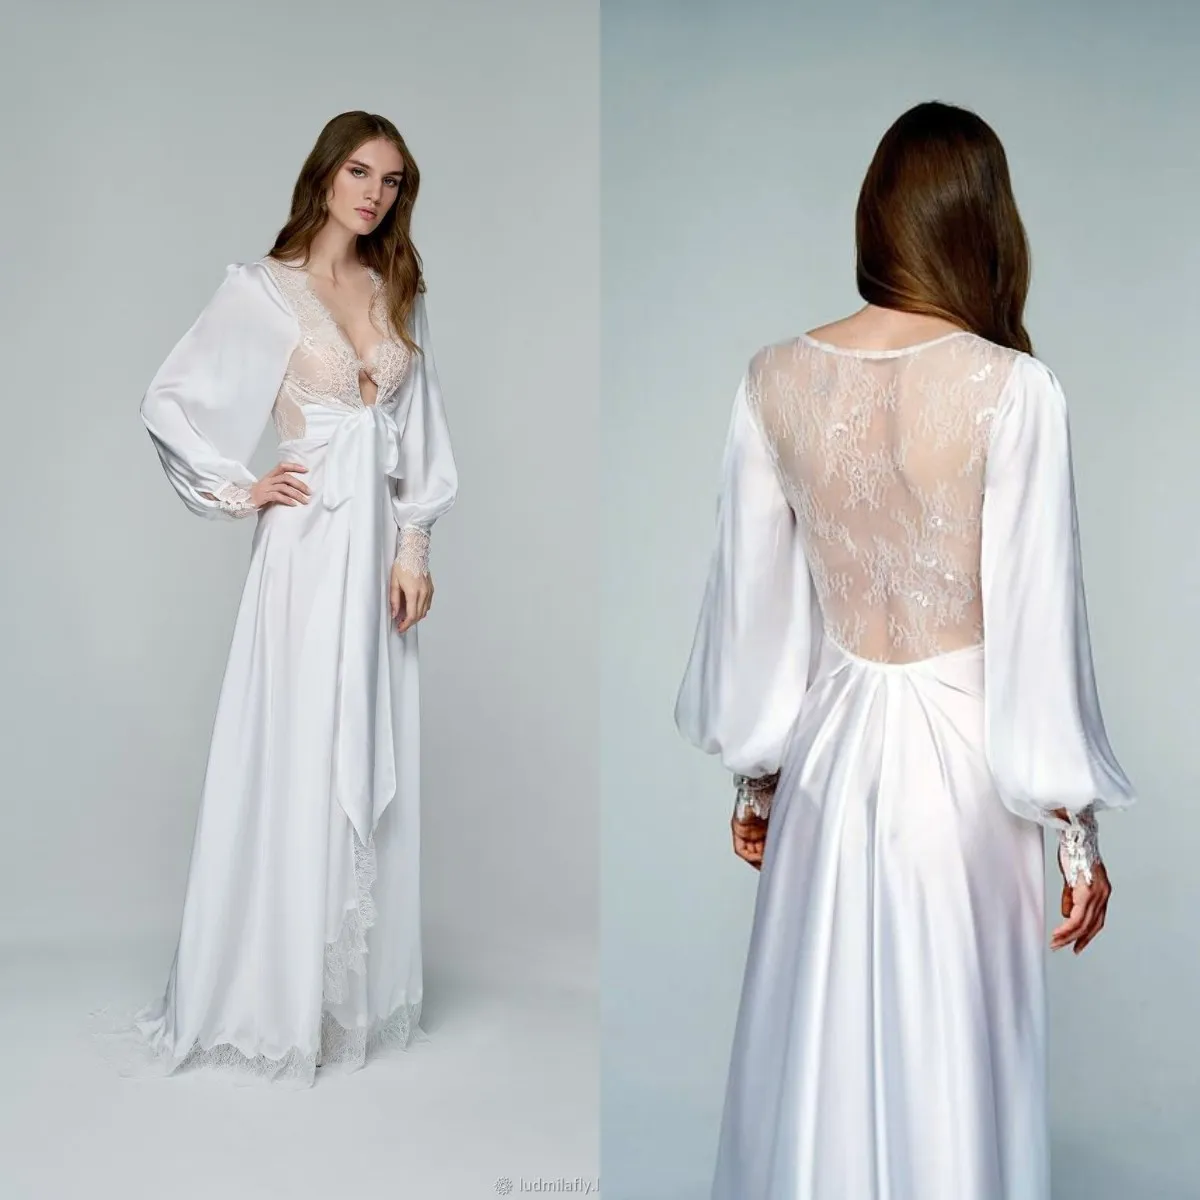 Hoge kwaliteit zijde satijn prom jurken kant rand vrouwen illusie avondjurk fotoshoot jurken lange gewaden op maat gemaakt